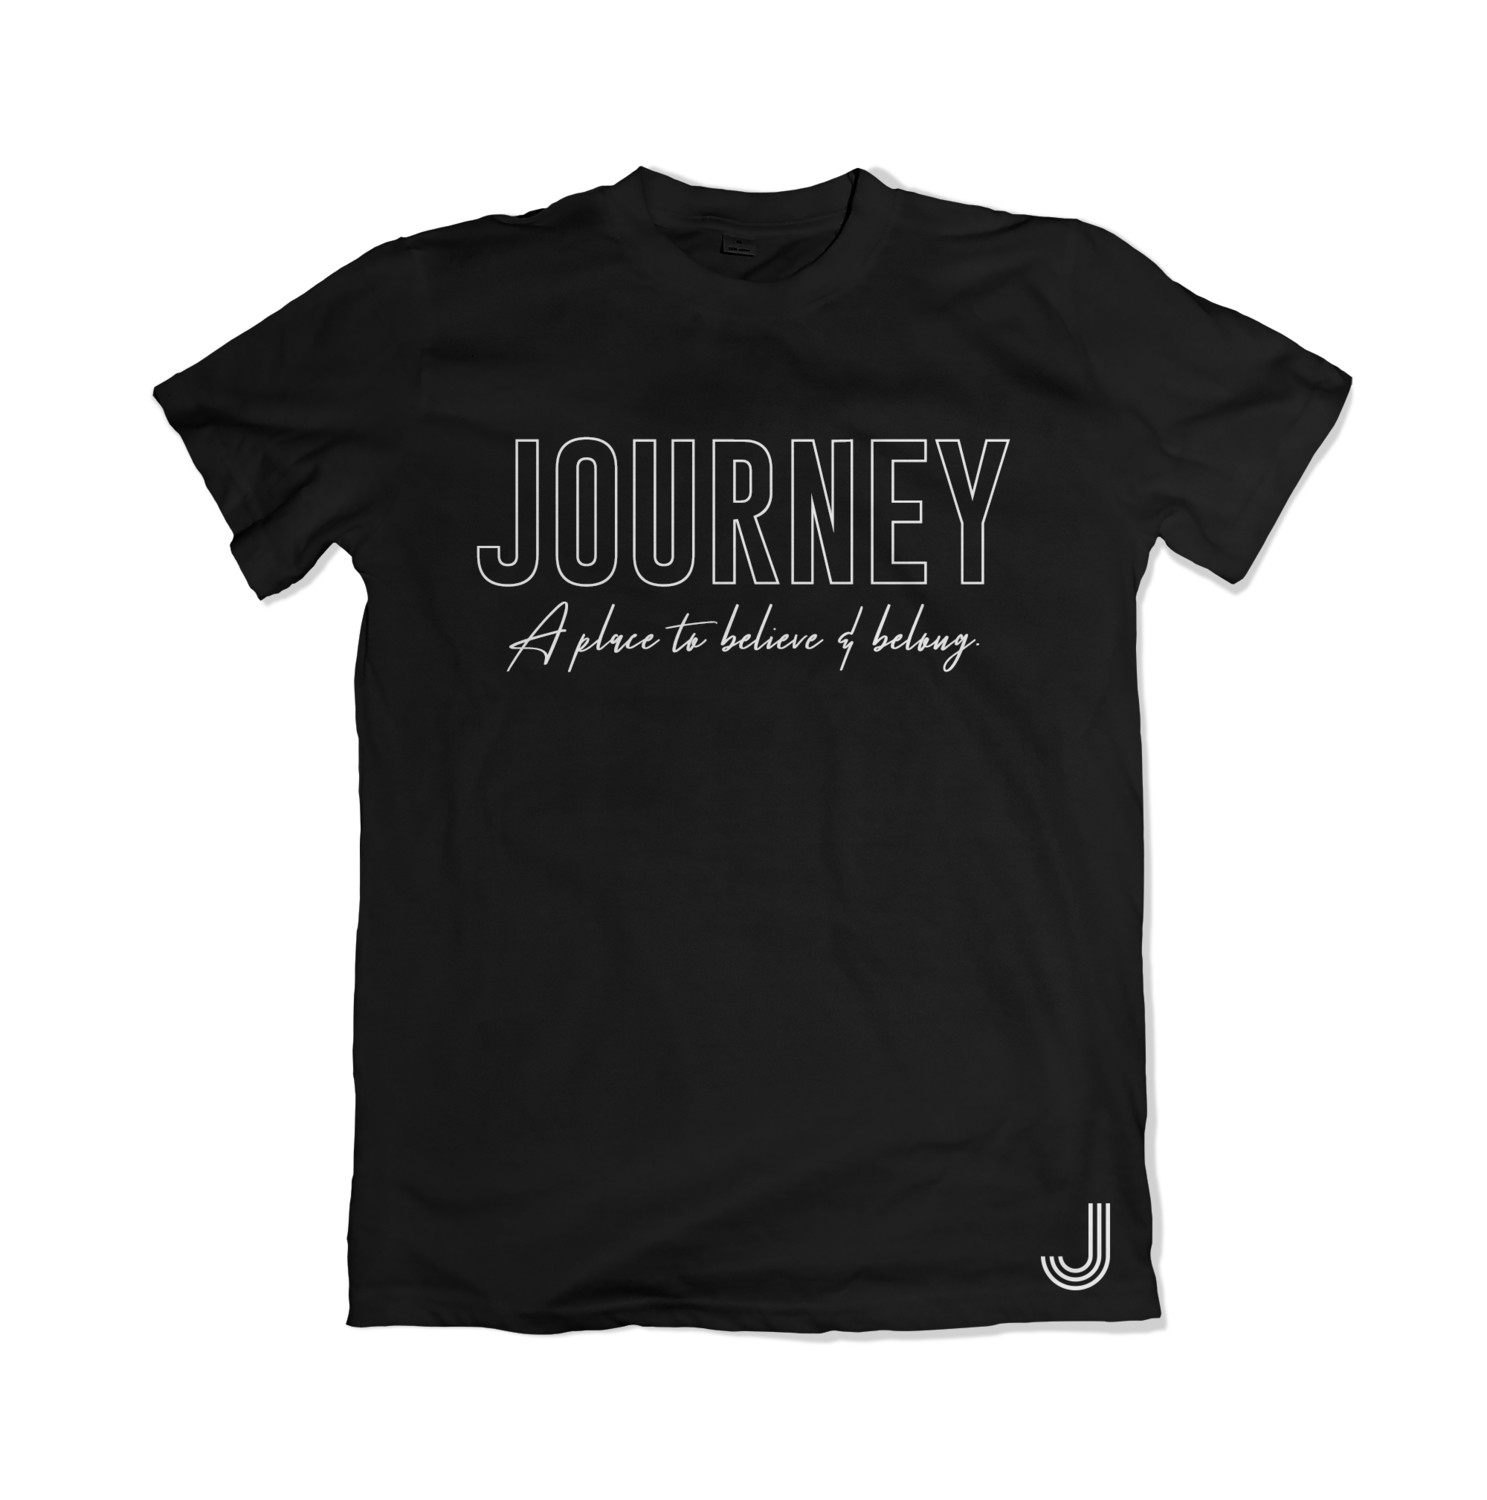 Journey Tee - Believe & Belong (Black)